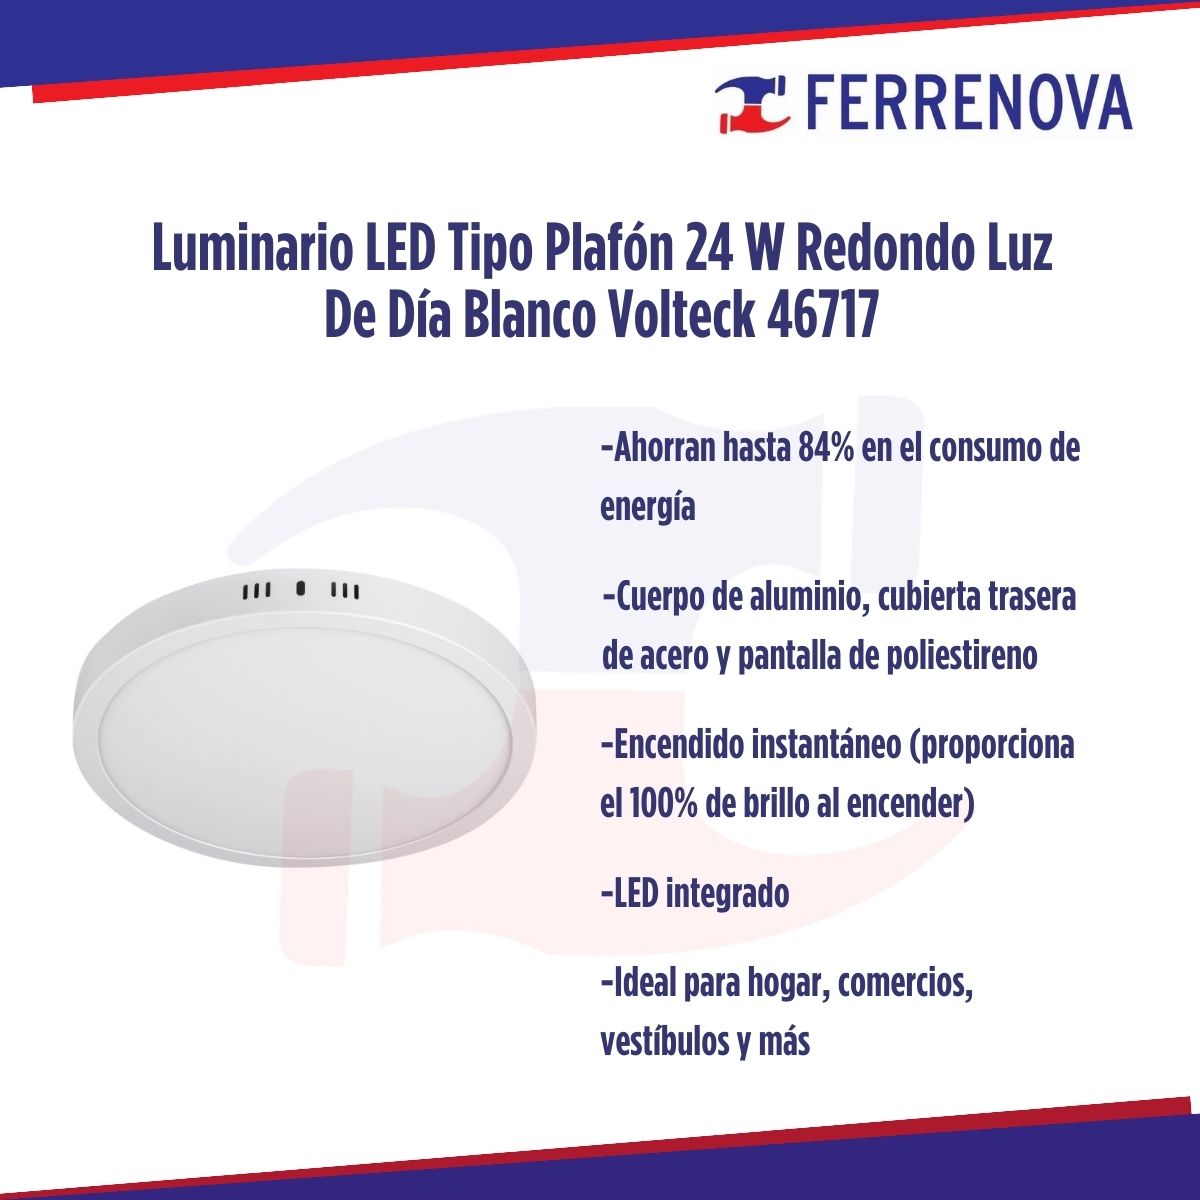 Luminario LED Tipo Plafón 24 W Redondo Luz De Día Blanco Volteck 46717